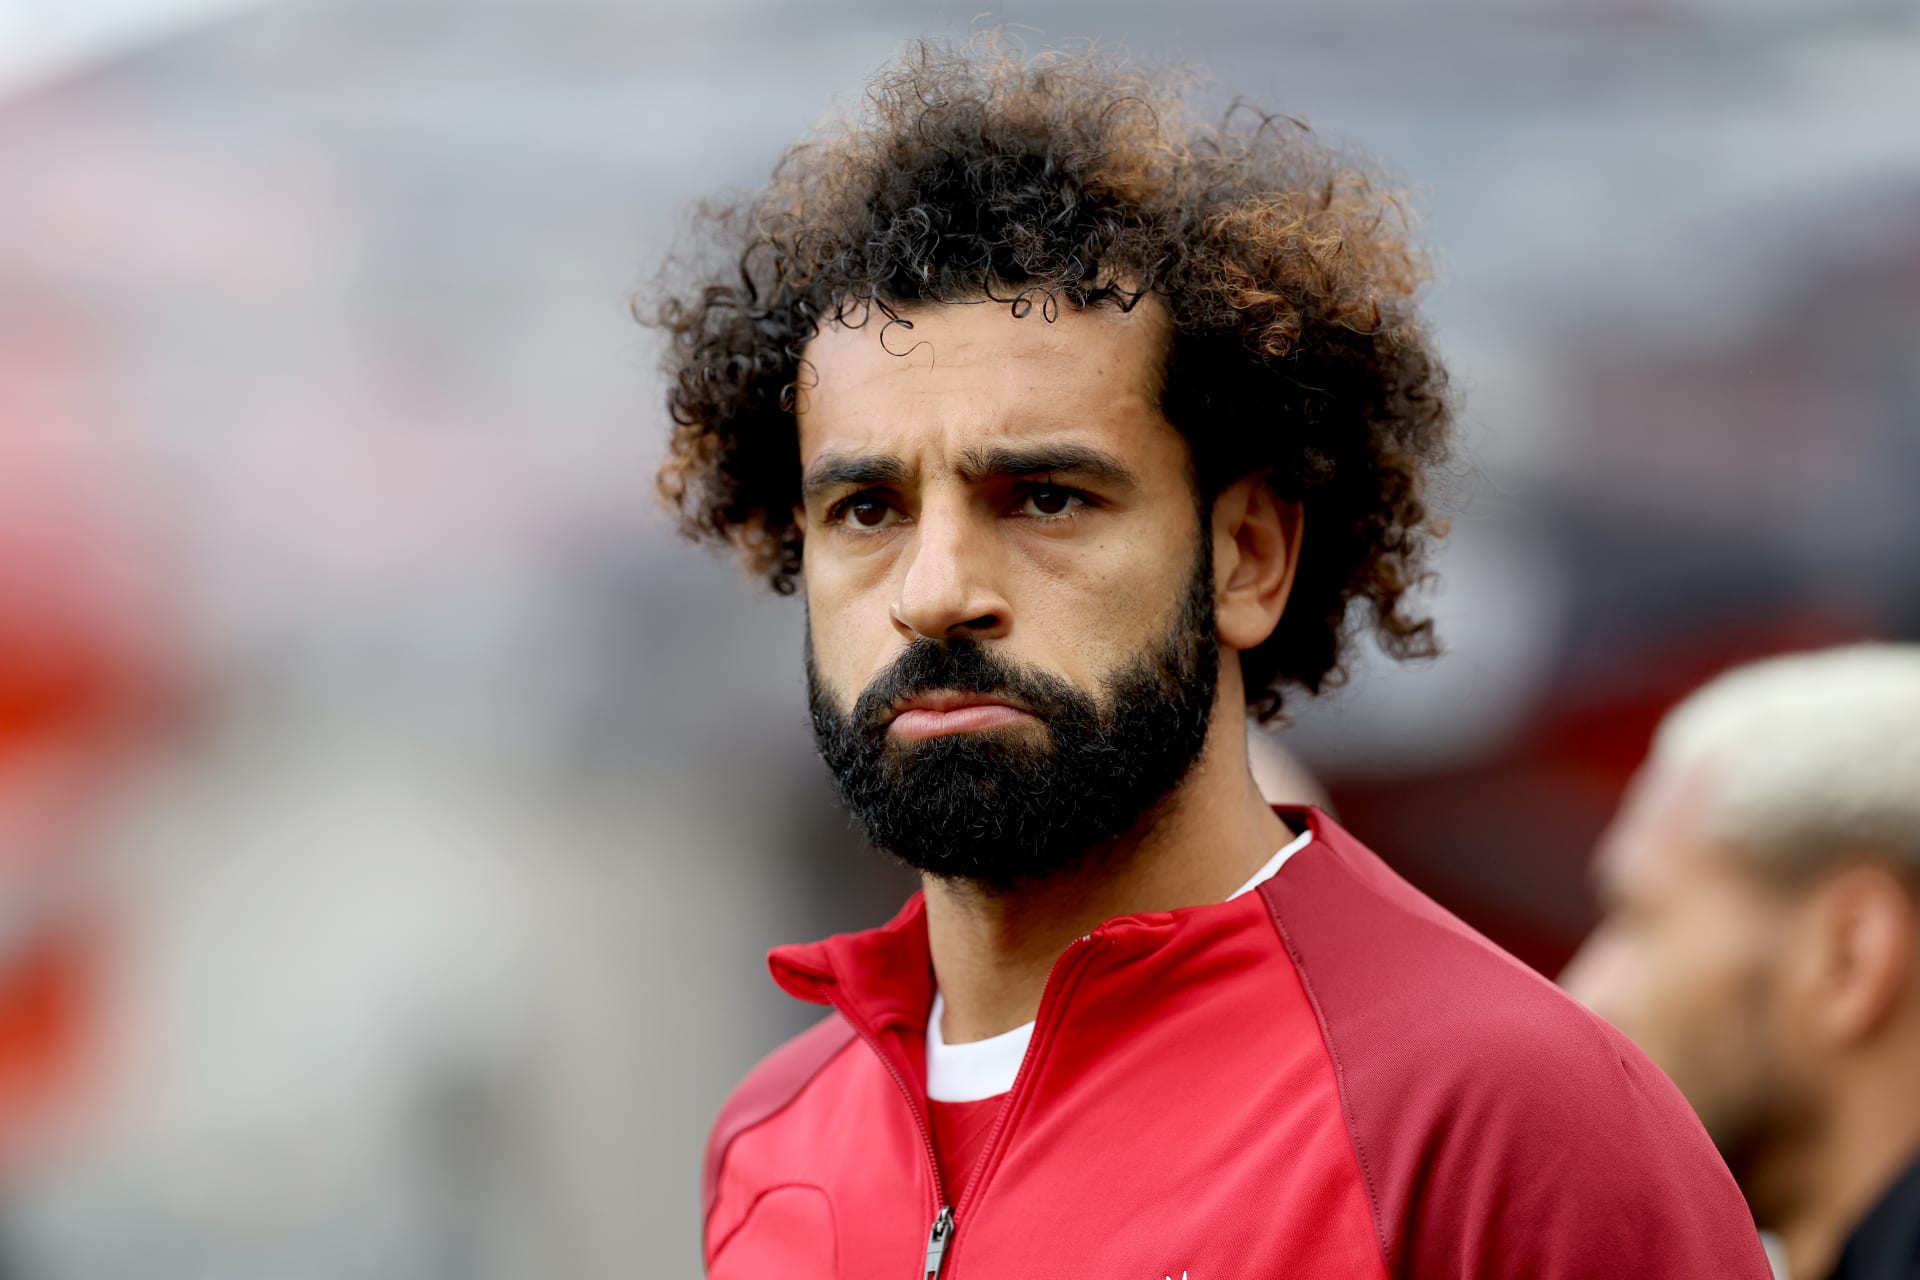 مدير الرابطه يرد على حقيقة مشاركة الأندية السعودية في دوري أبطال أوروبا وحظر تعاقدها مع صلاح.